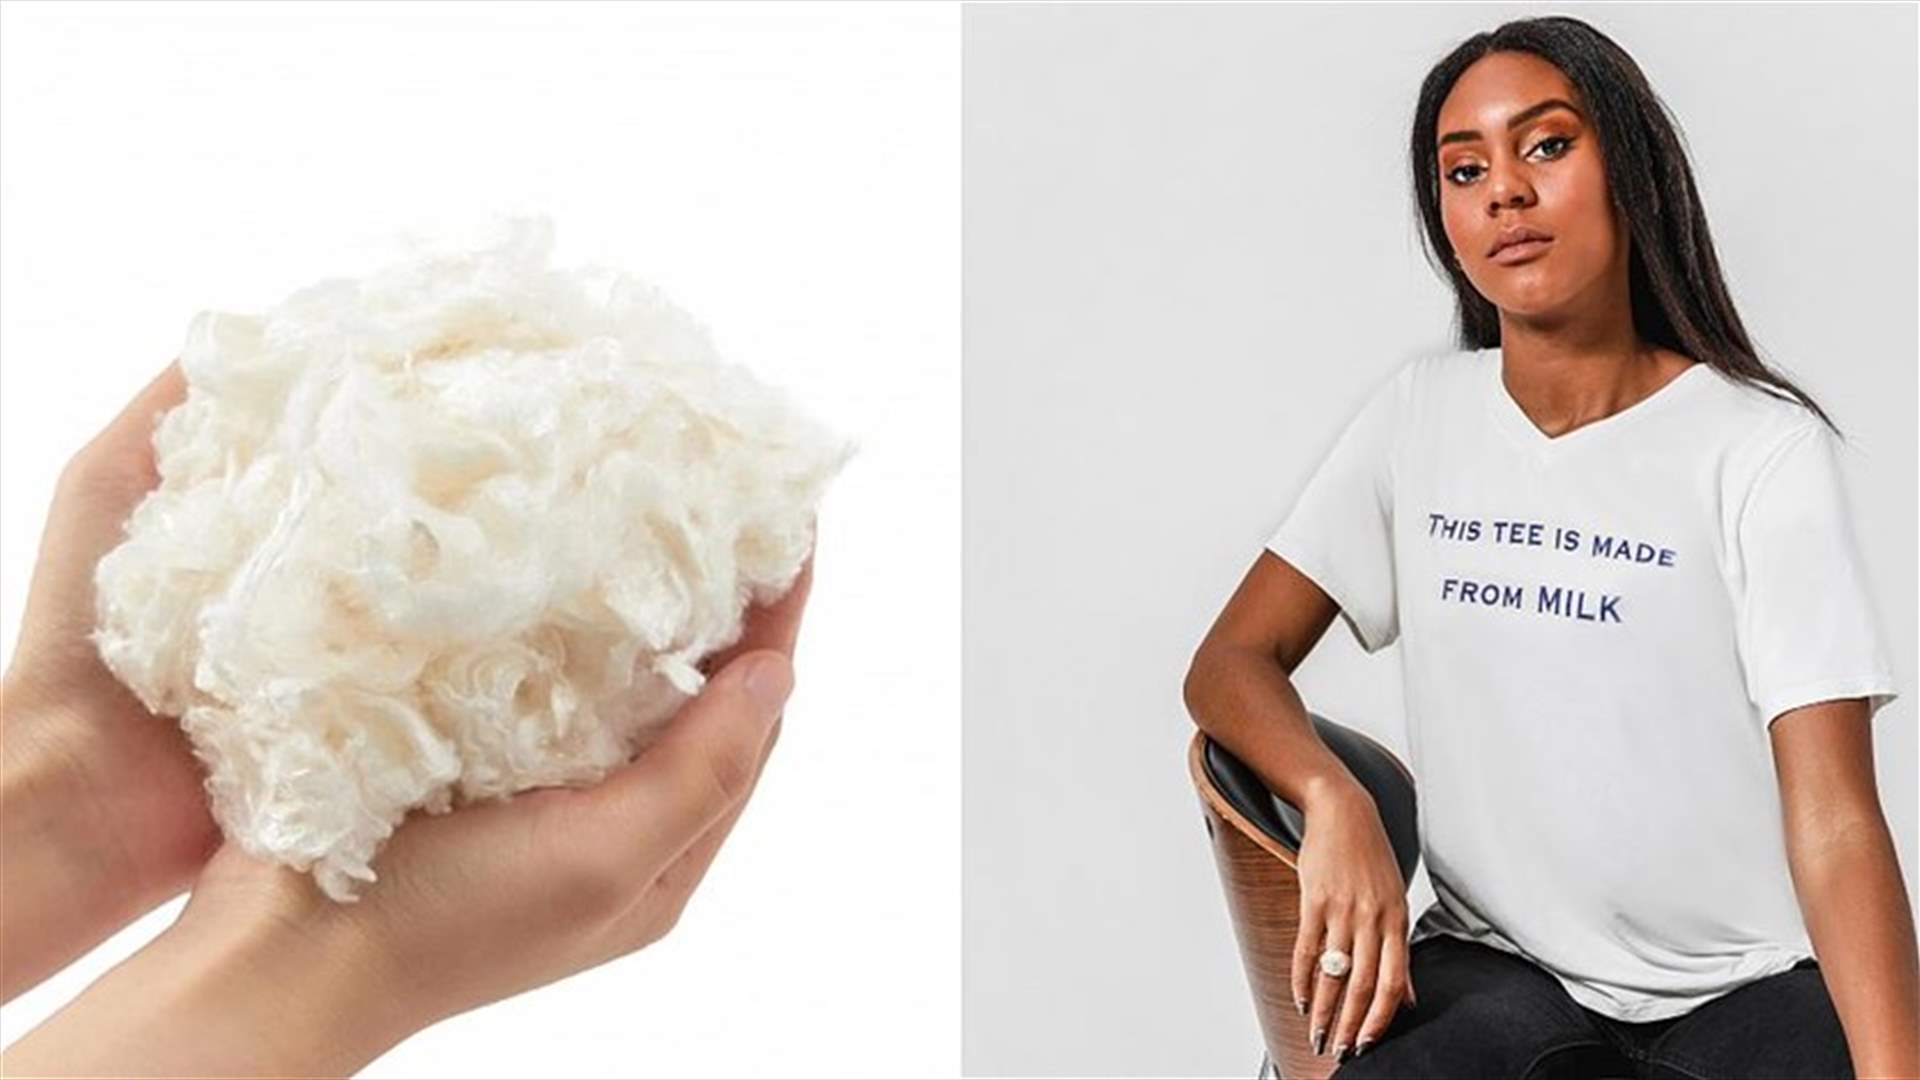 شركة تقتحم عالم الأزياء بتصنيعها الملابس من الحليب الفاسد (صور)